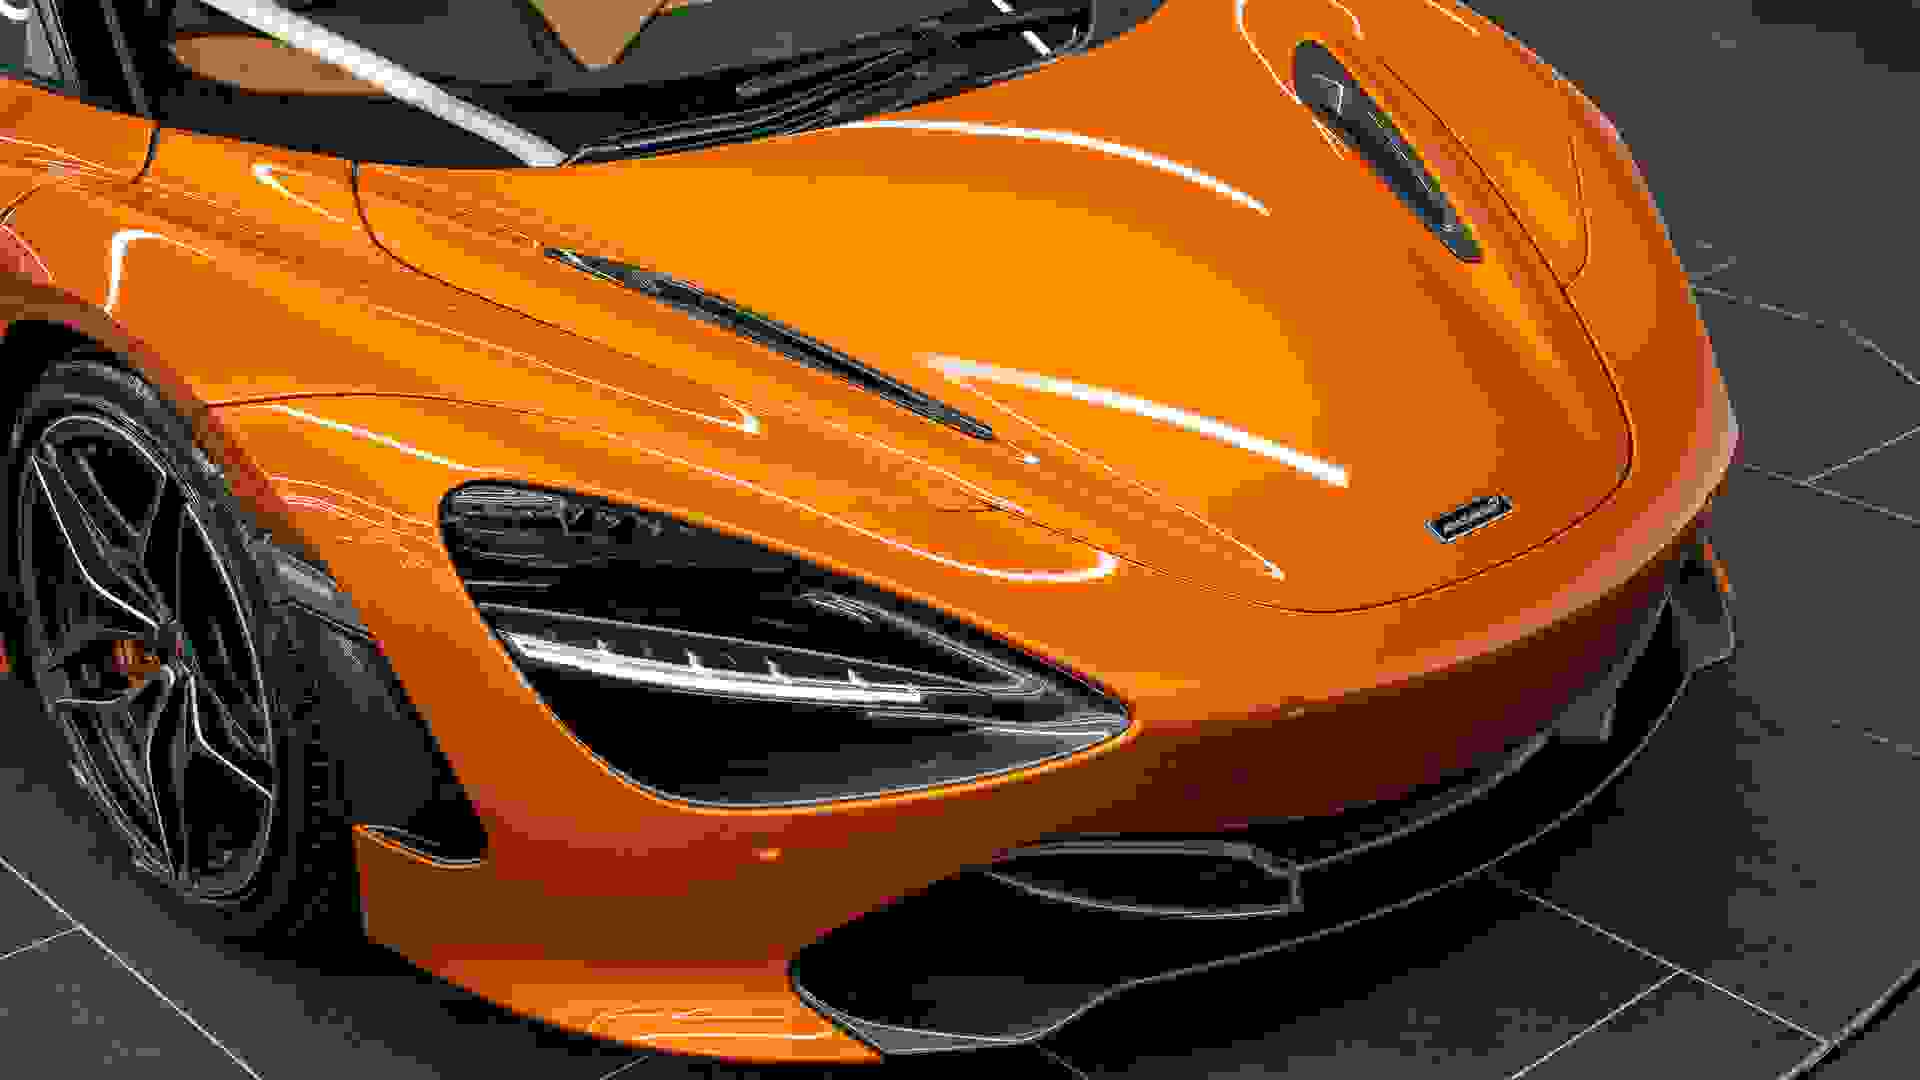 McLaren 720S Photo 0742f87e-2895-4661-a612-fb498b3a149d.jpg